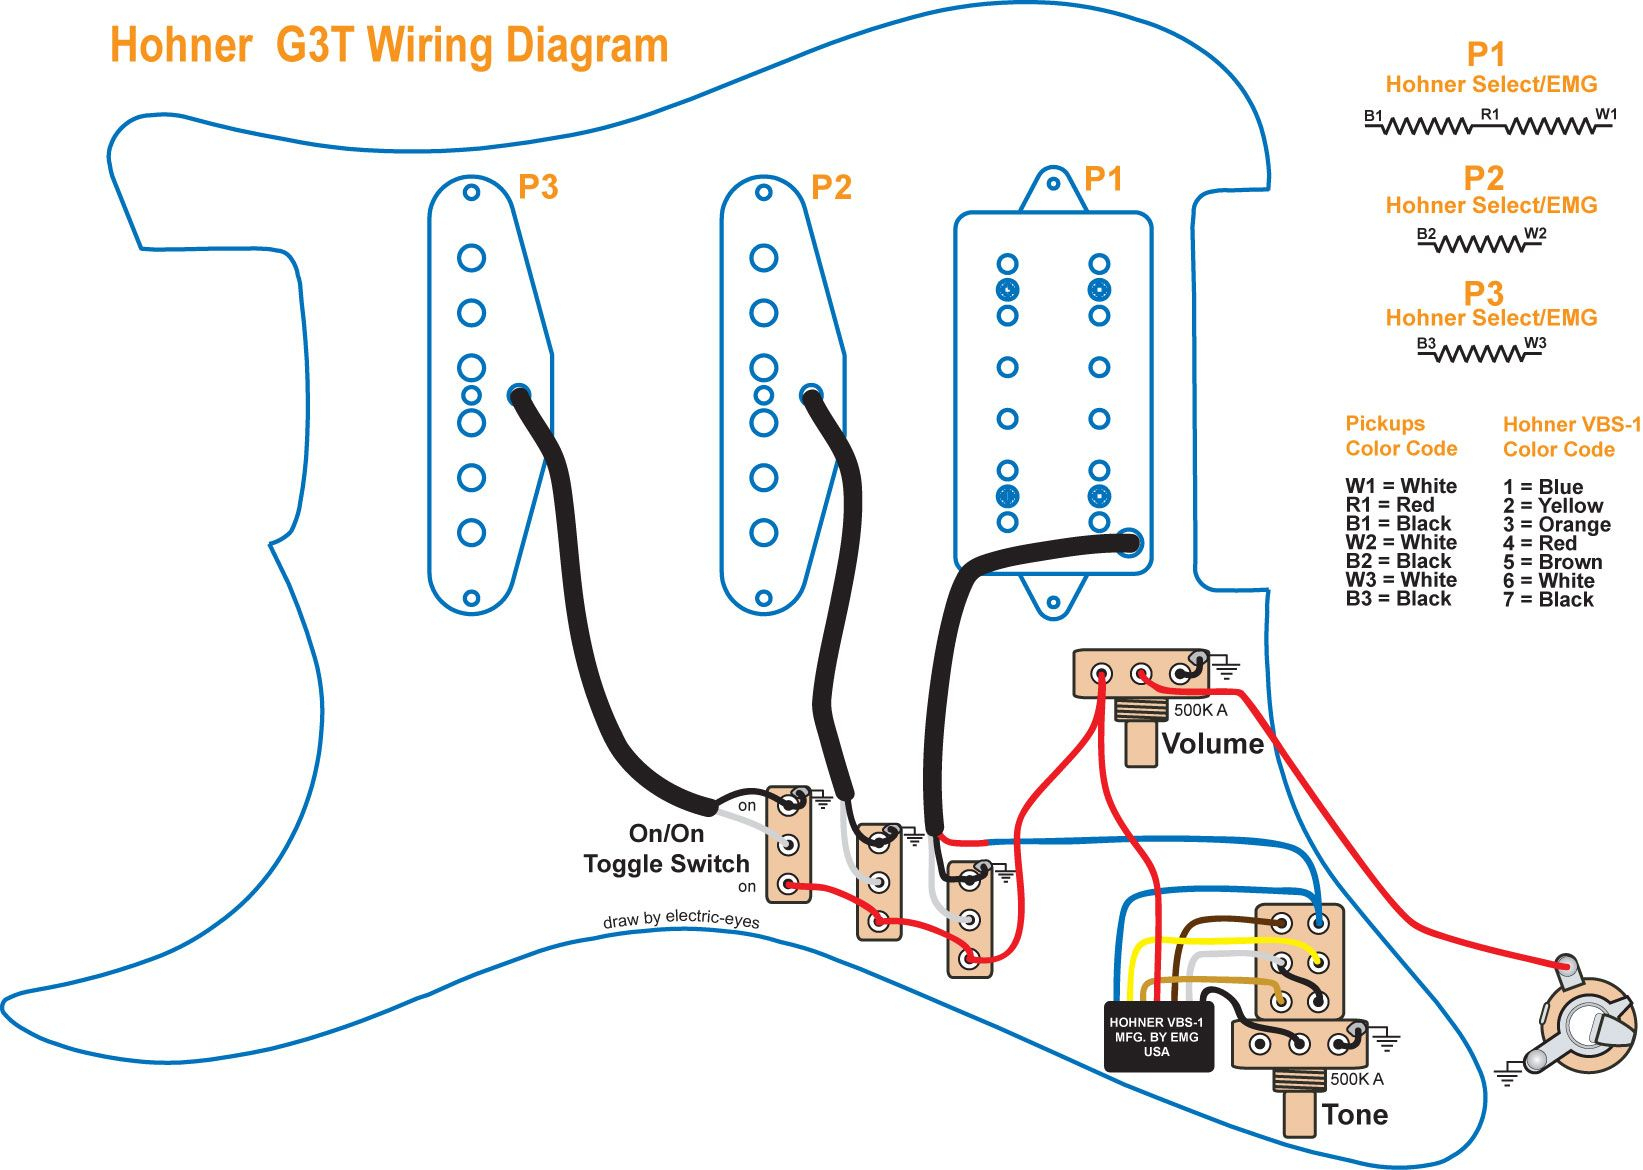 Guitar Wiring Schematics - Wiring Diagrams Hubs - Guitar Wiring Diagram 2 Humbucker 1 Volume 1 Tone